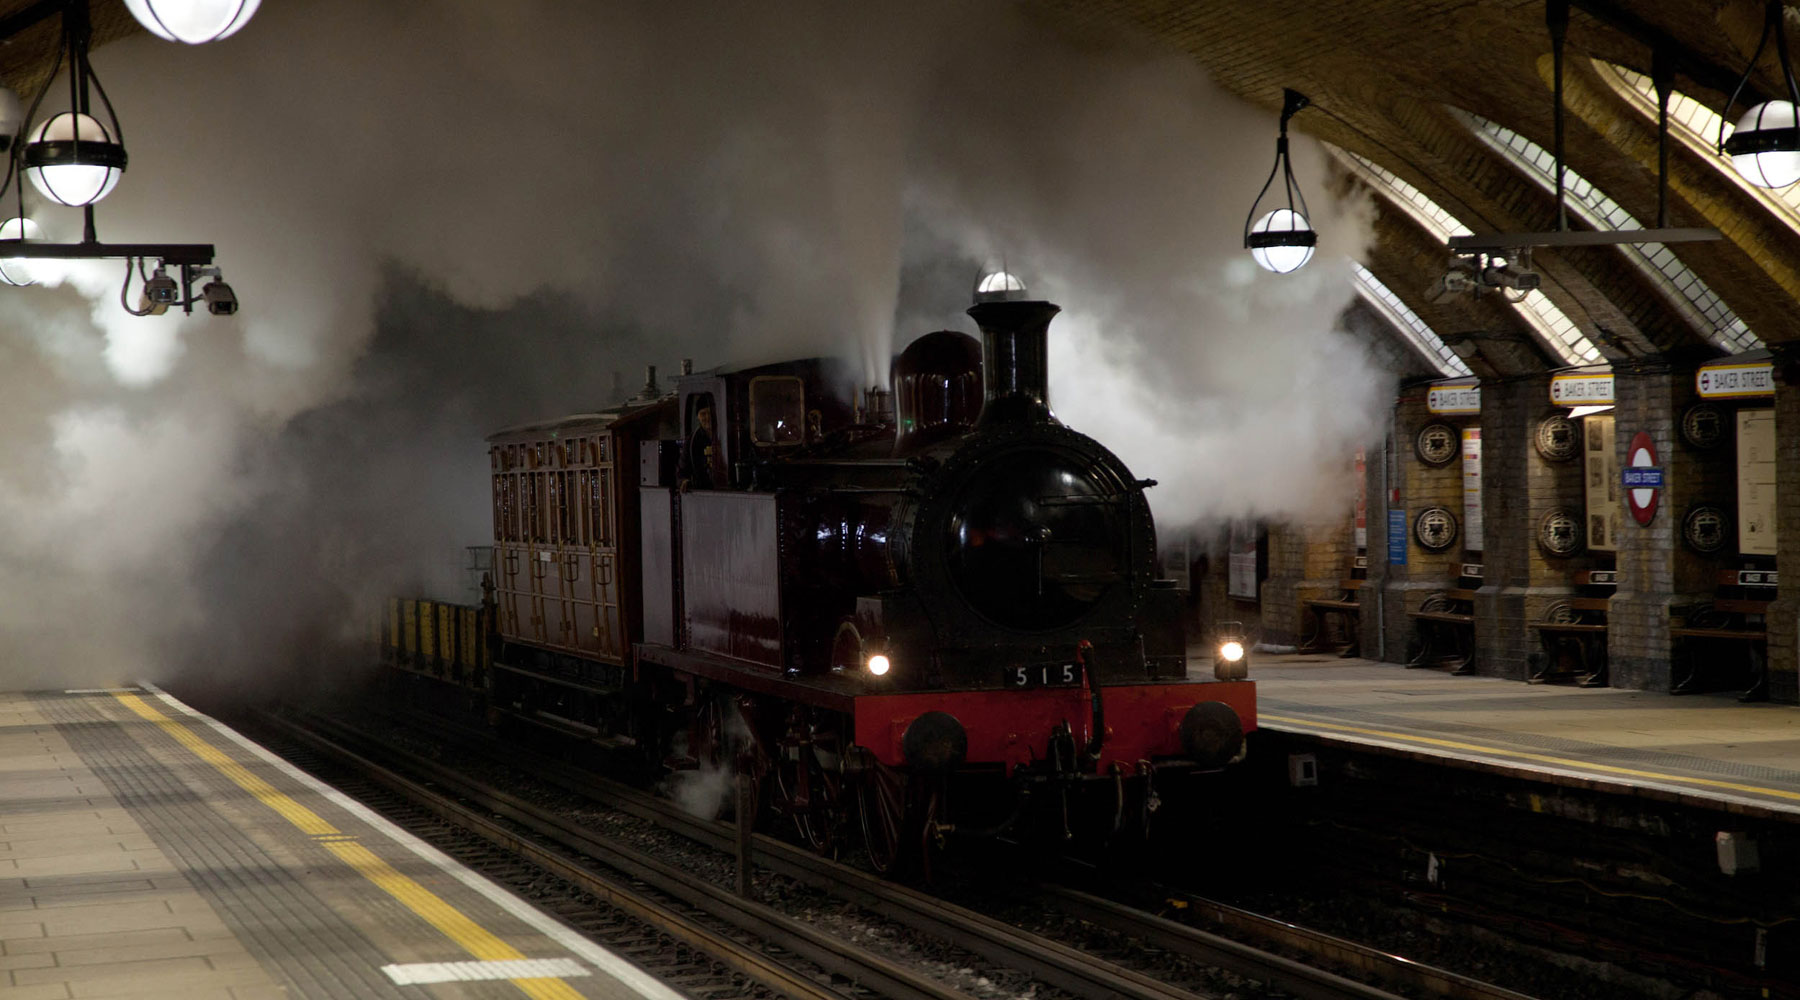 London underground steam